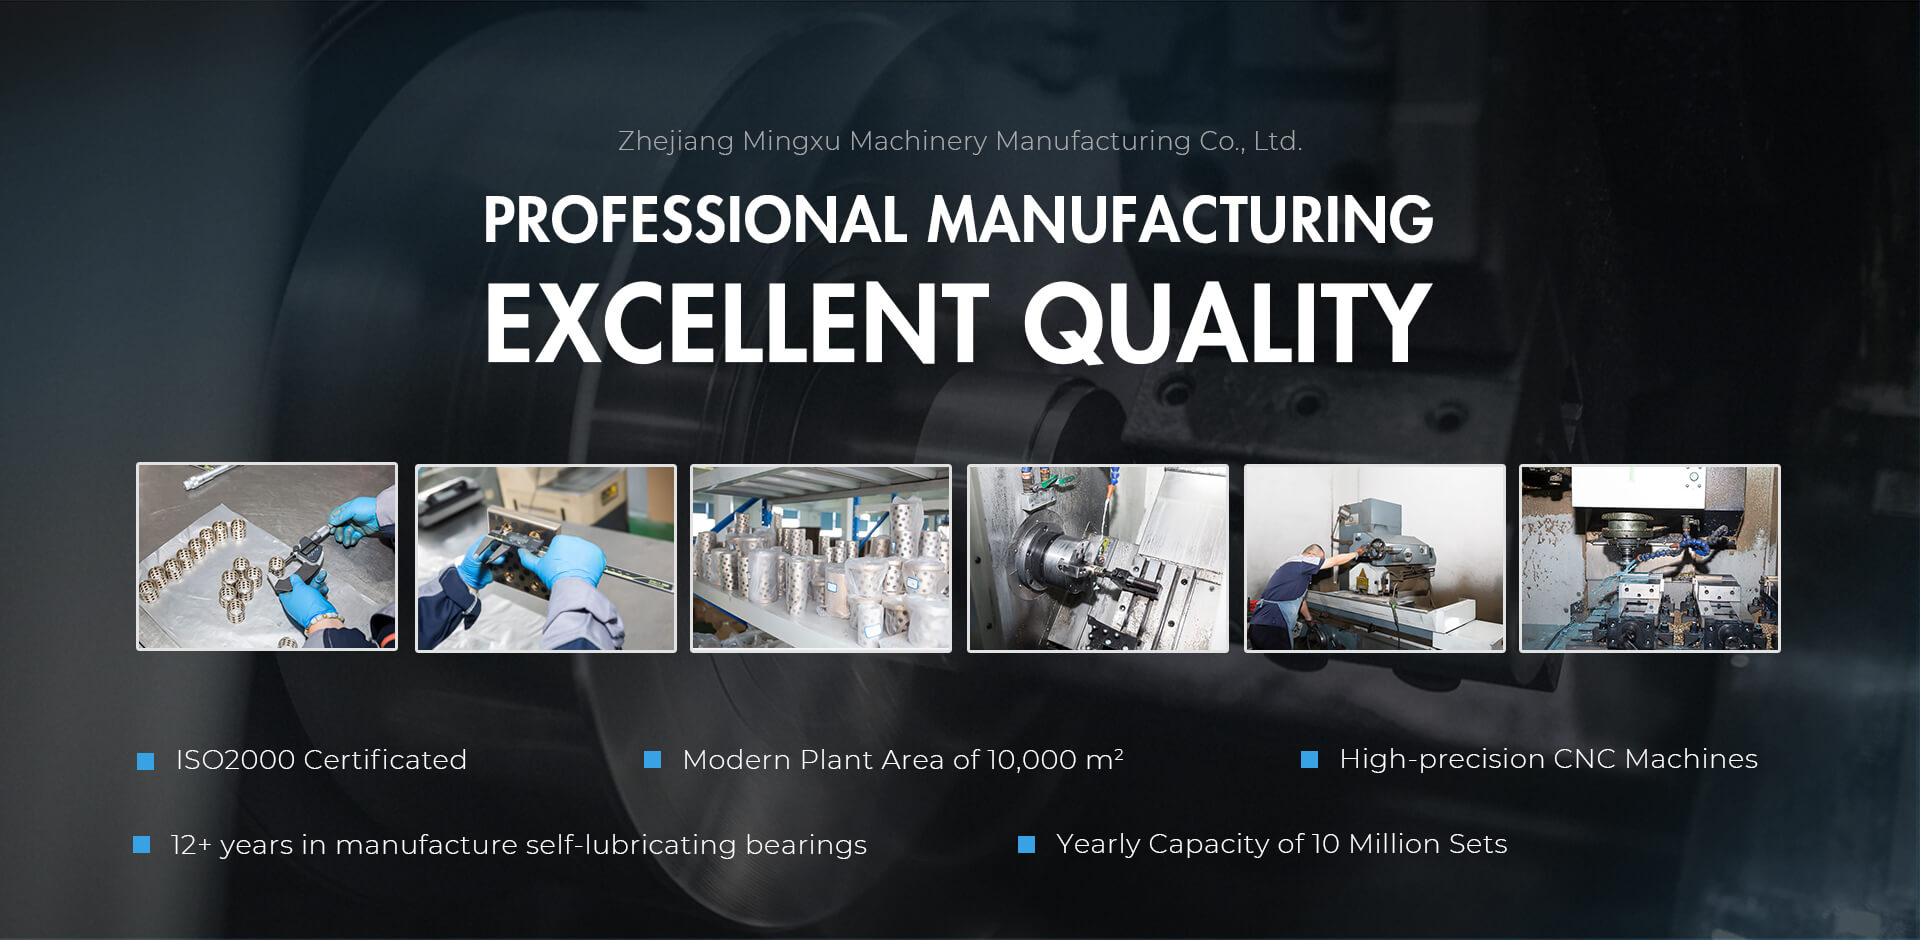 Zhejiang Mingxu Machinery Manufacturing Co., Ltd.